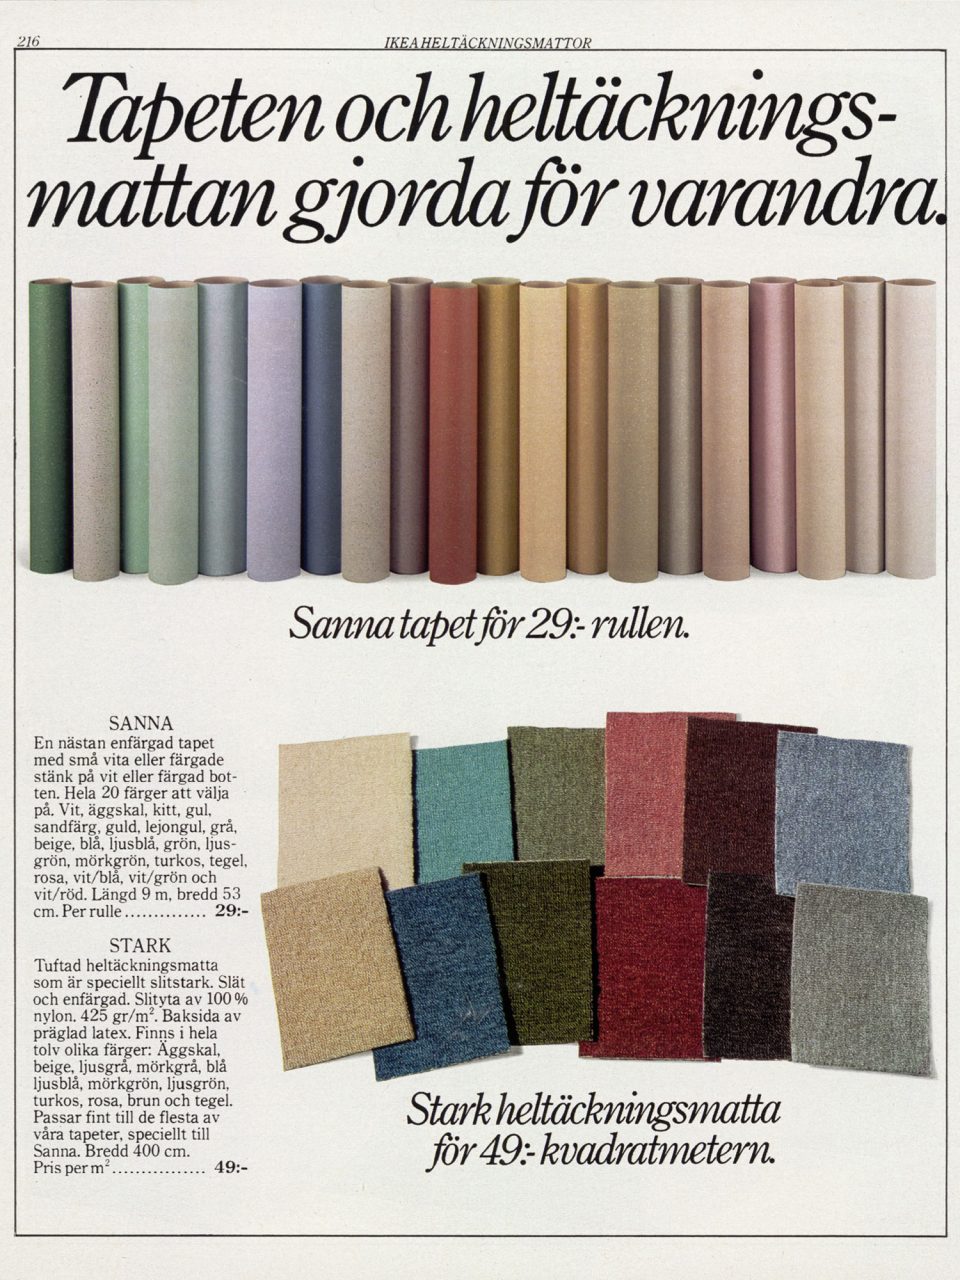 Sida i IKEA katalogen 1982 med tapetrullar i pastellfärger ur serien SANNA, samt mattprover ur serien STARK i mörka färger.